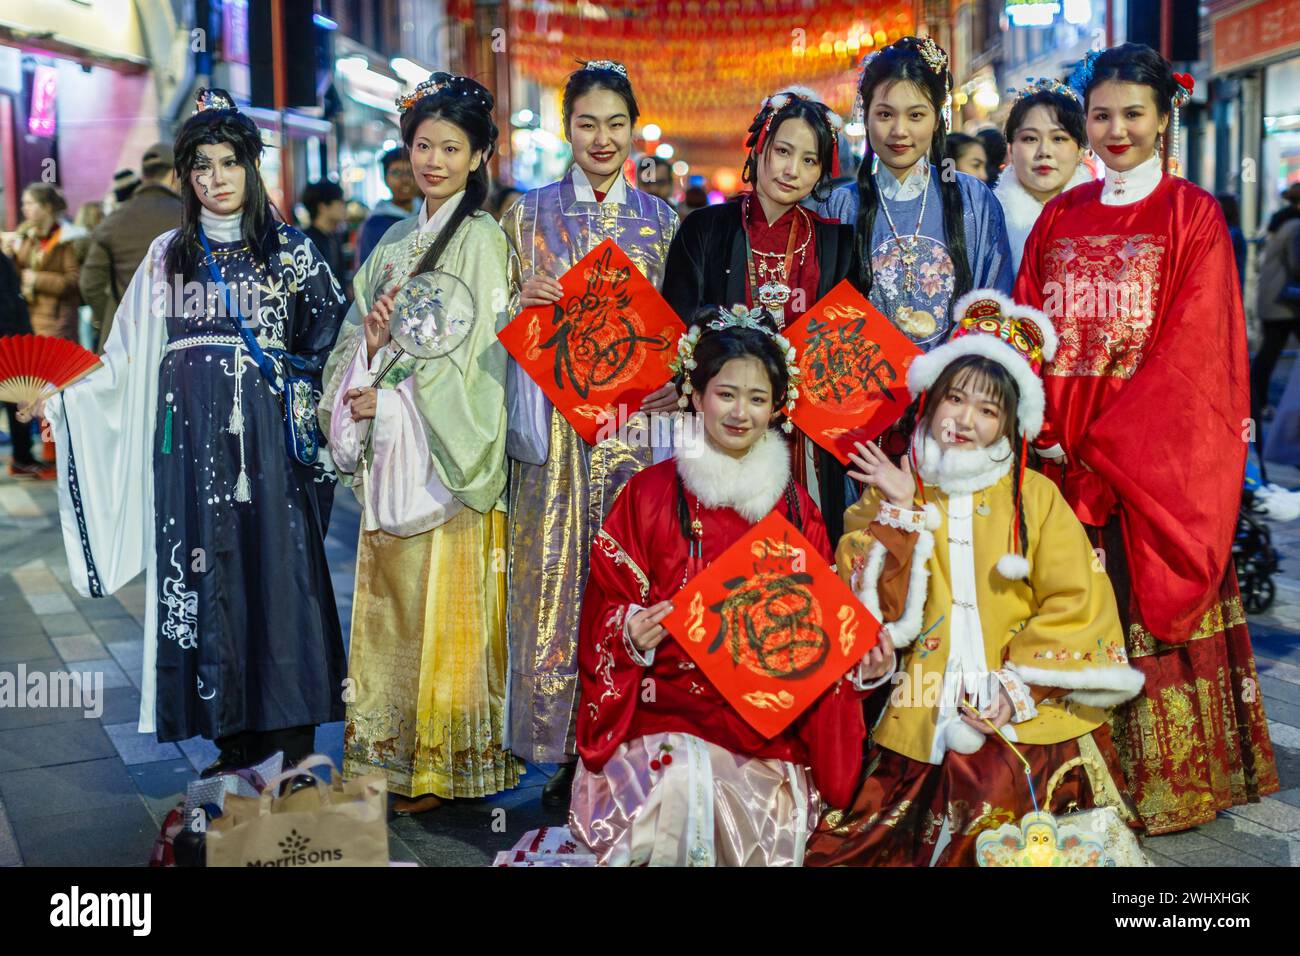 Traditionell in Hanfu-Outfits gekleidet in Londons Chinatown während der Mondneujahrsfeier. Stockfoto